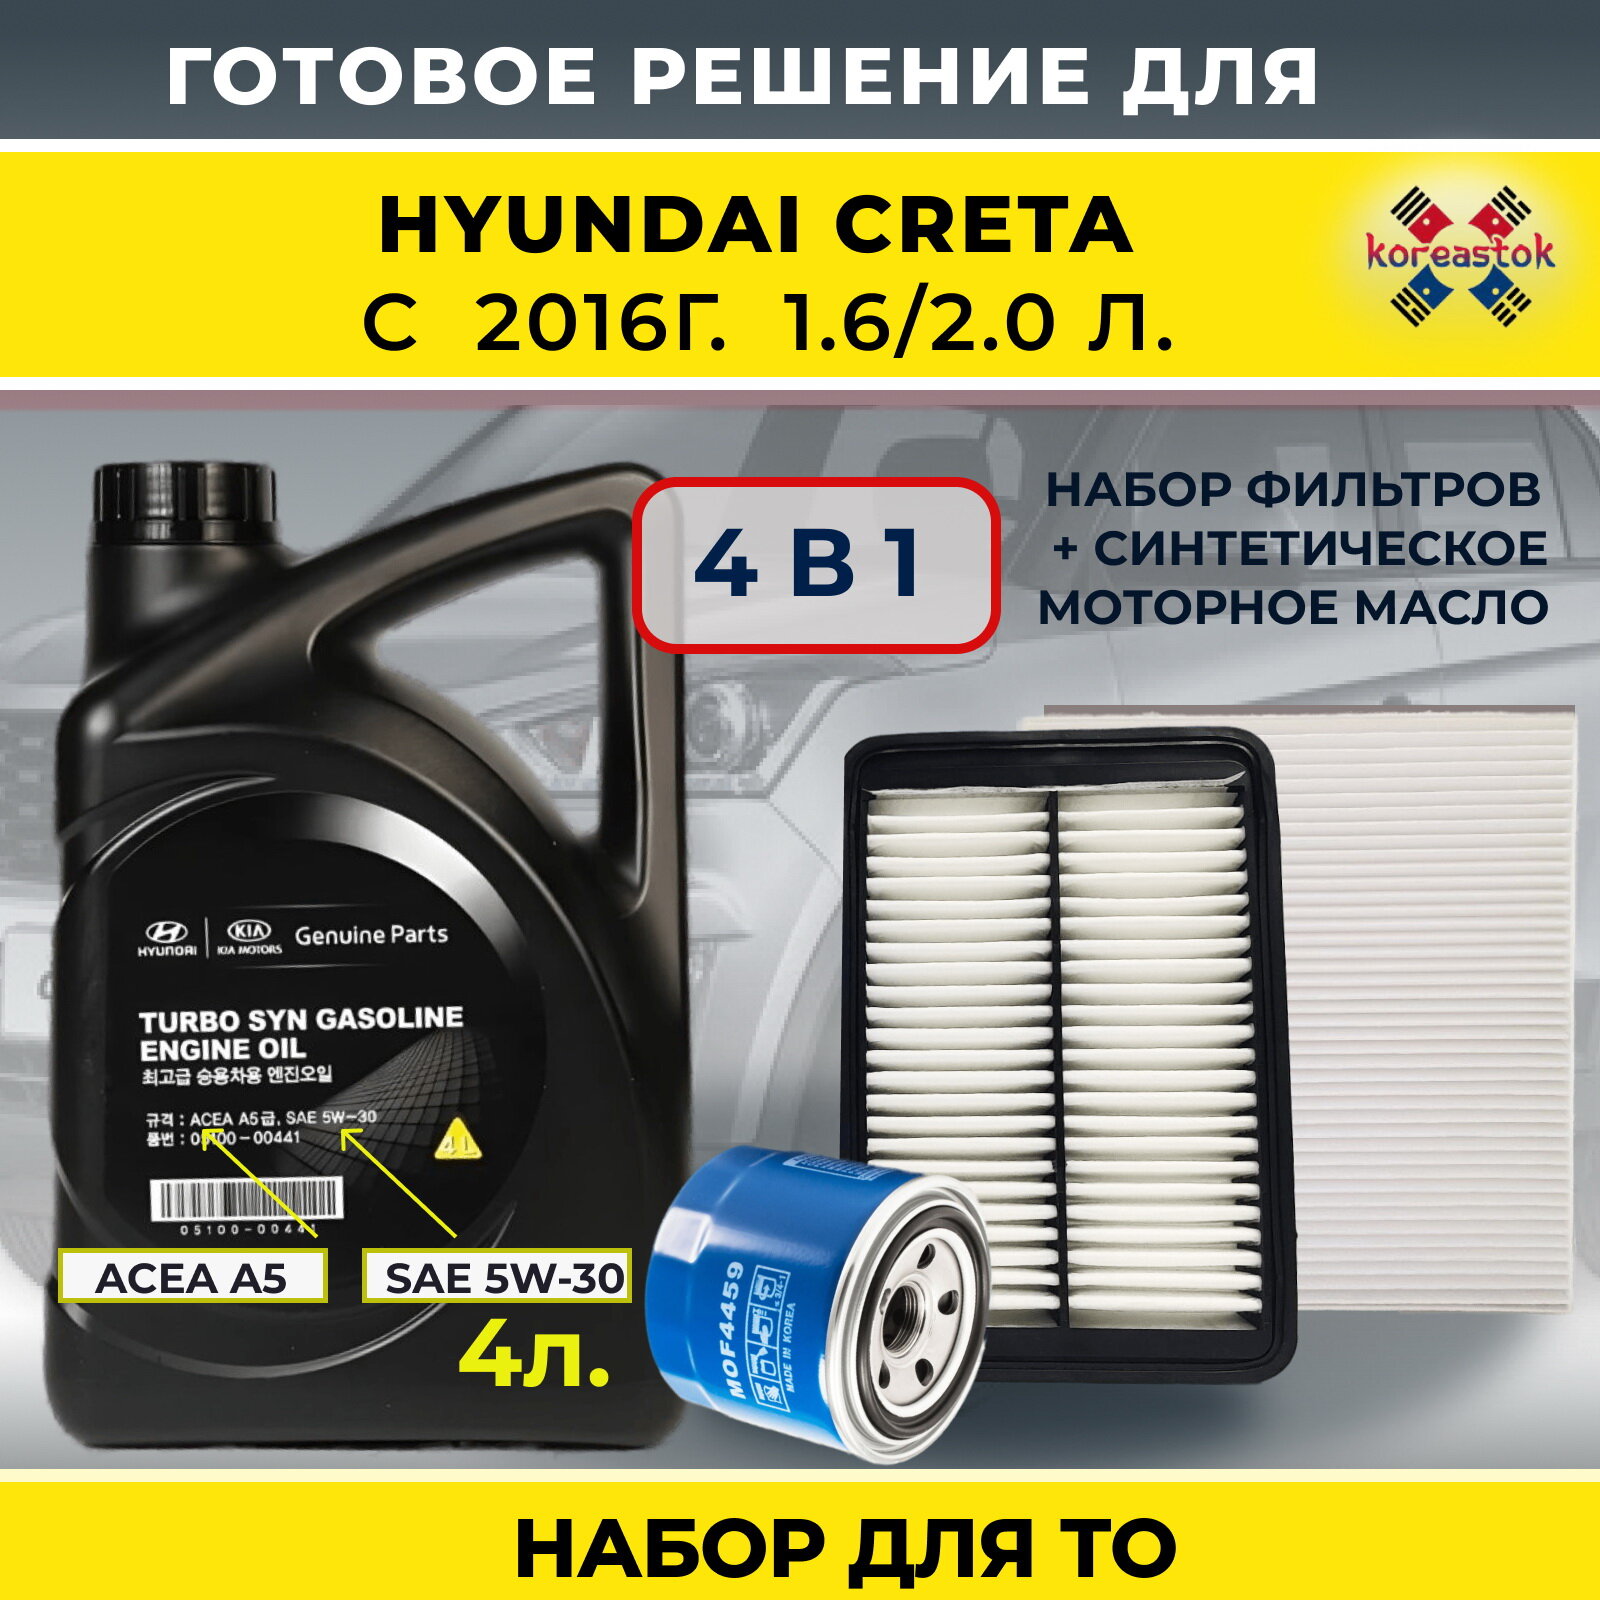 4 в 1. Набор фильтров для Hyundai Creta 1,6 с 2016г. и синтетическое моторное масло 5w-30, 4л.